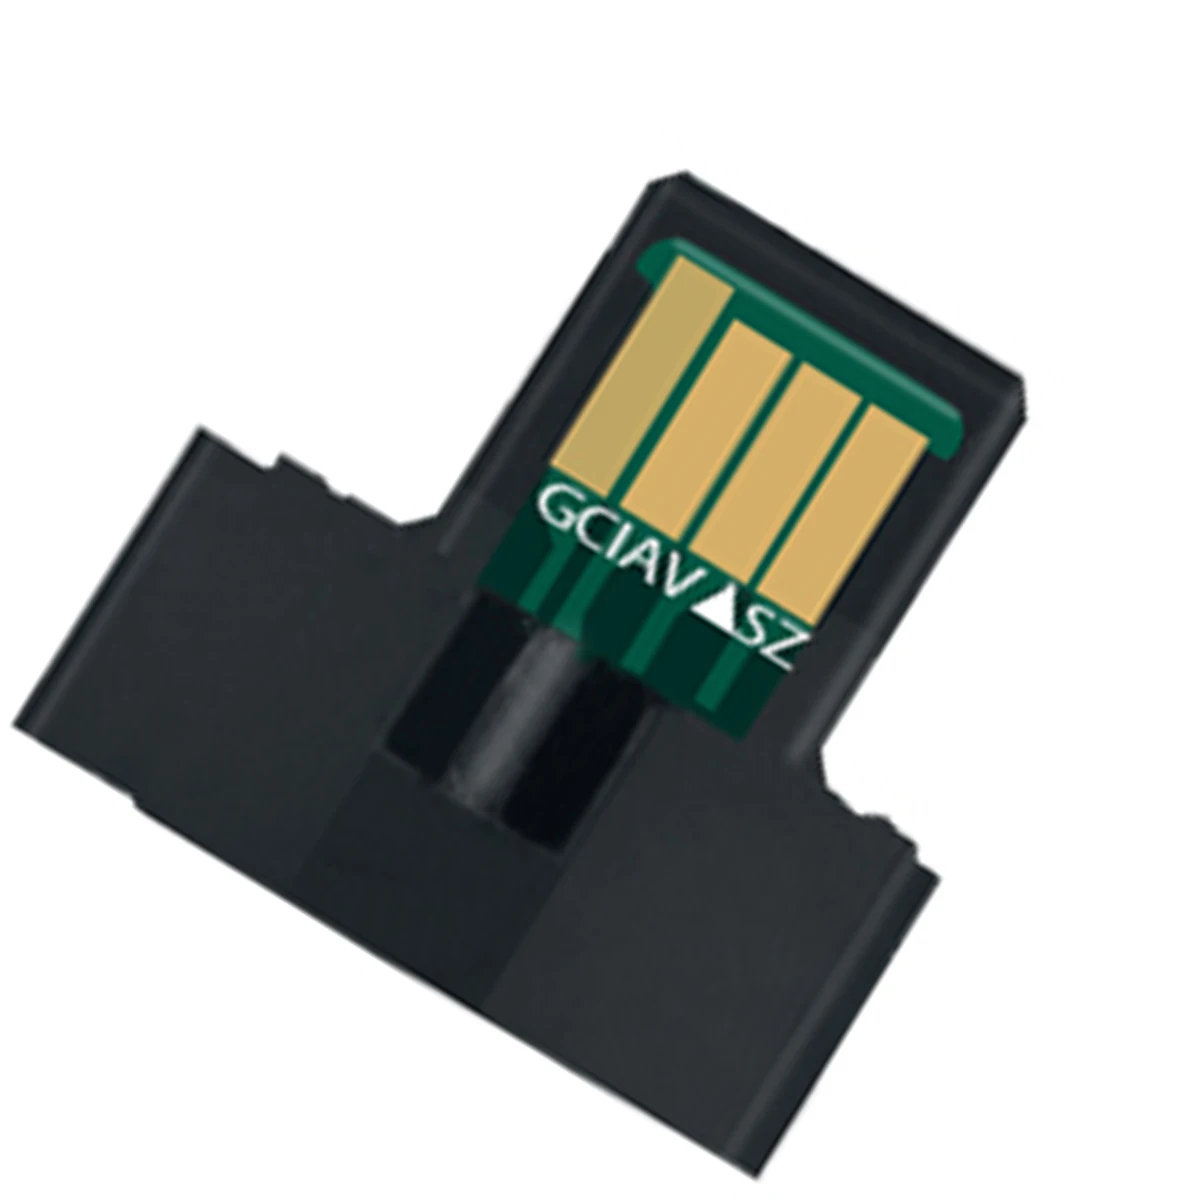 

Toner Chip Refill Kits for Sharp MX-C38 JT-B MX-C38 JT-C MX-C38 JT-M MX-C38 JT-Y MX-C38 ST-B MX-C38 ST-C- MX-C38 ST-M